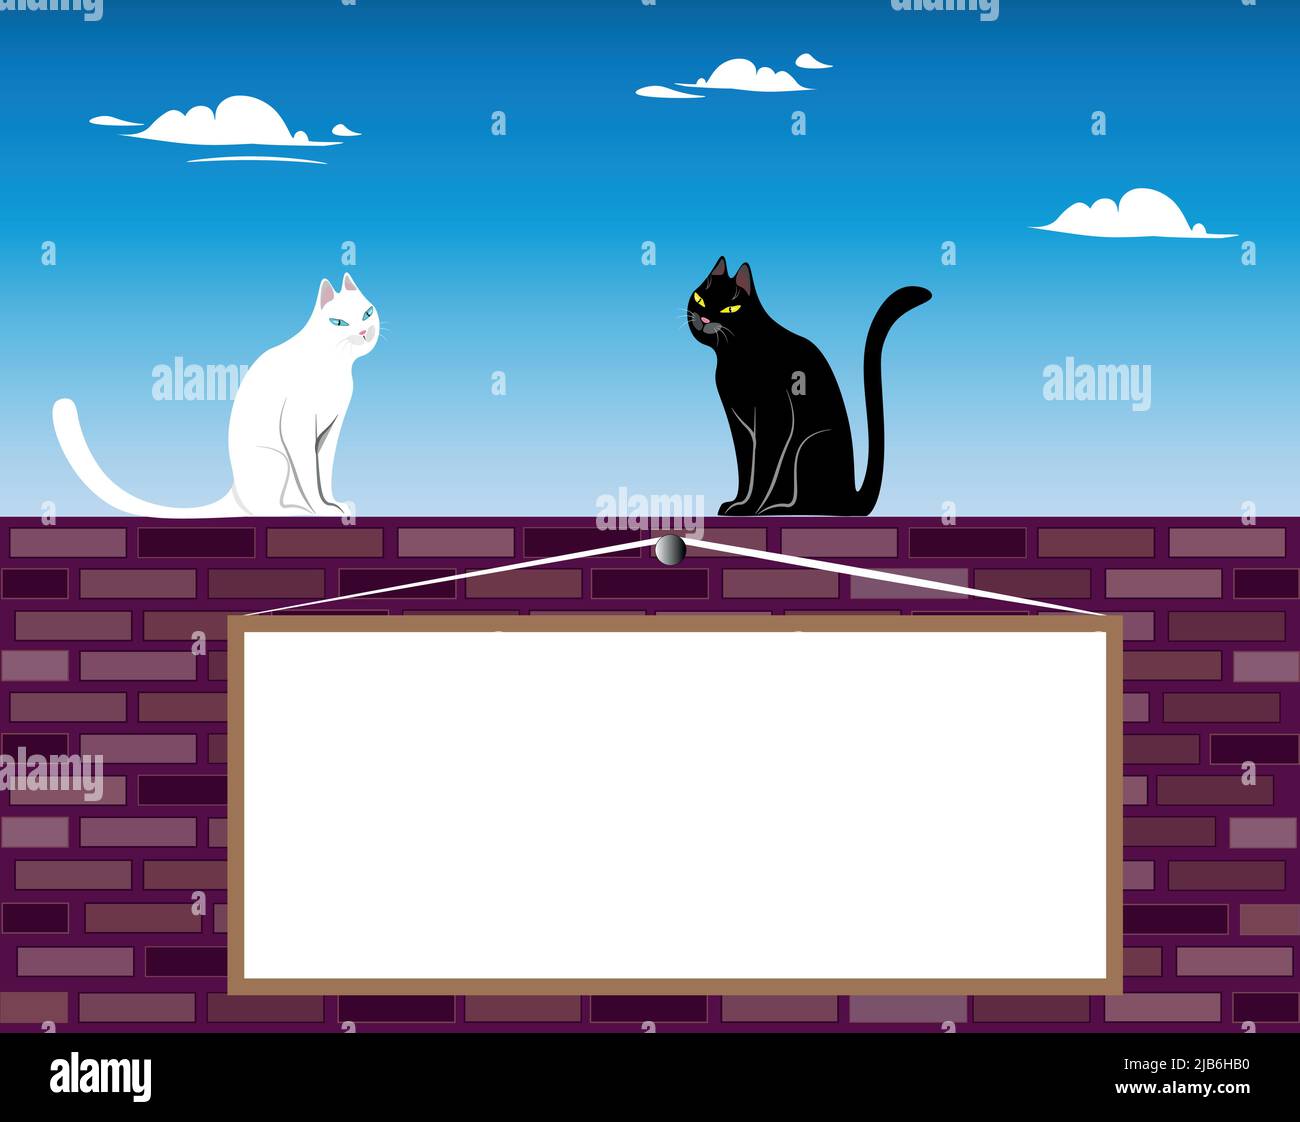 Schwarz-weiße Katze. Zwei Katzen, schwarz und weiß, sitzen auf einer Ziegelwand. Wolken schweben am Himmel. Es gibt ein Brett an der Wand für jede nette Stock Vektor